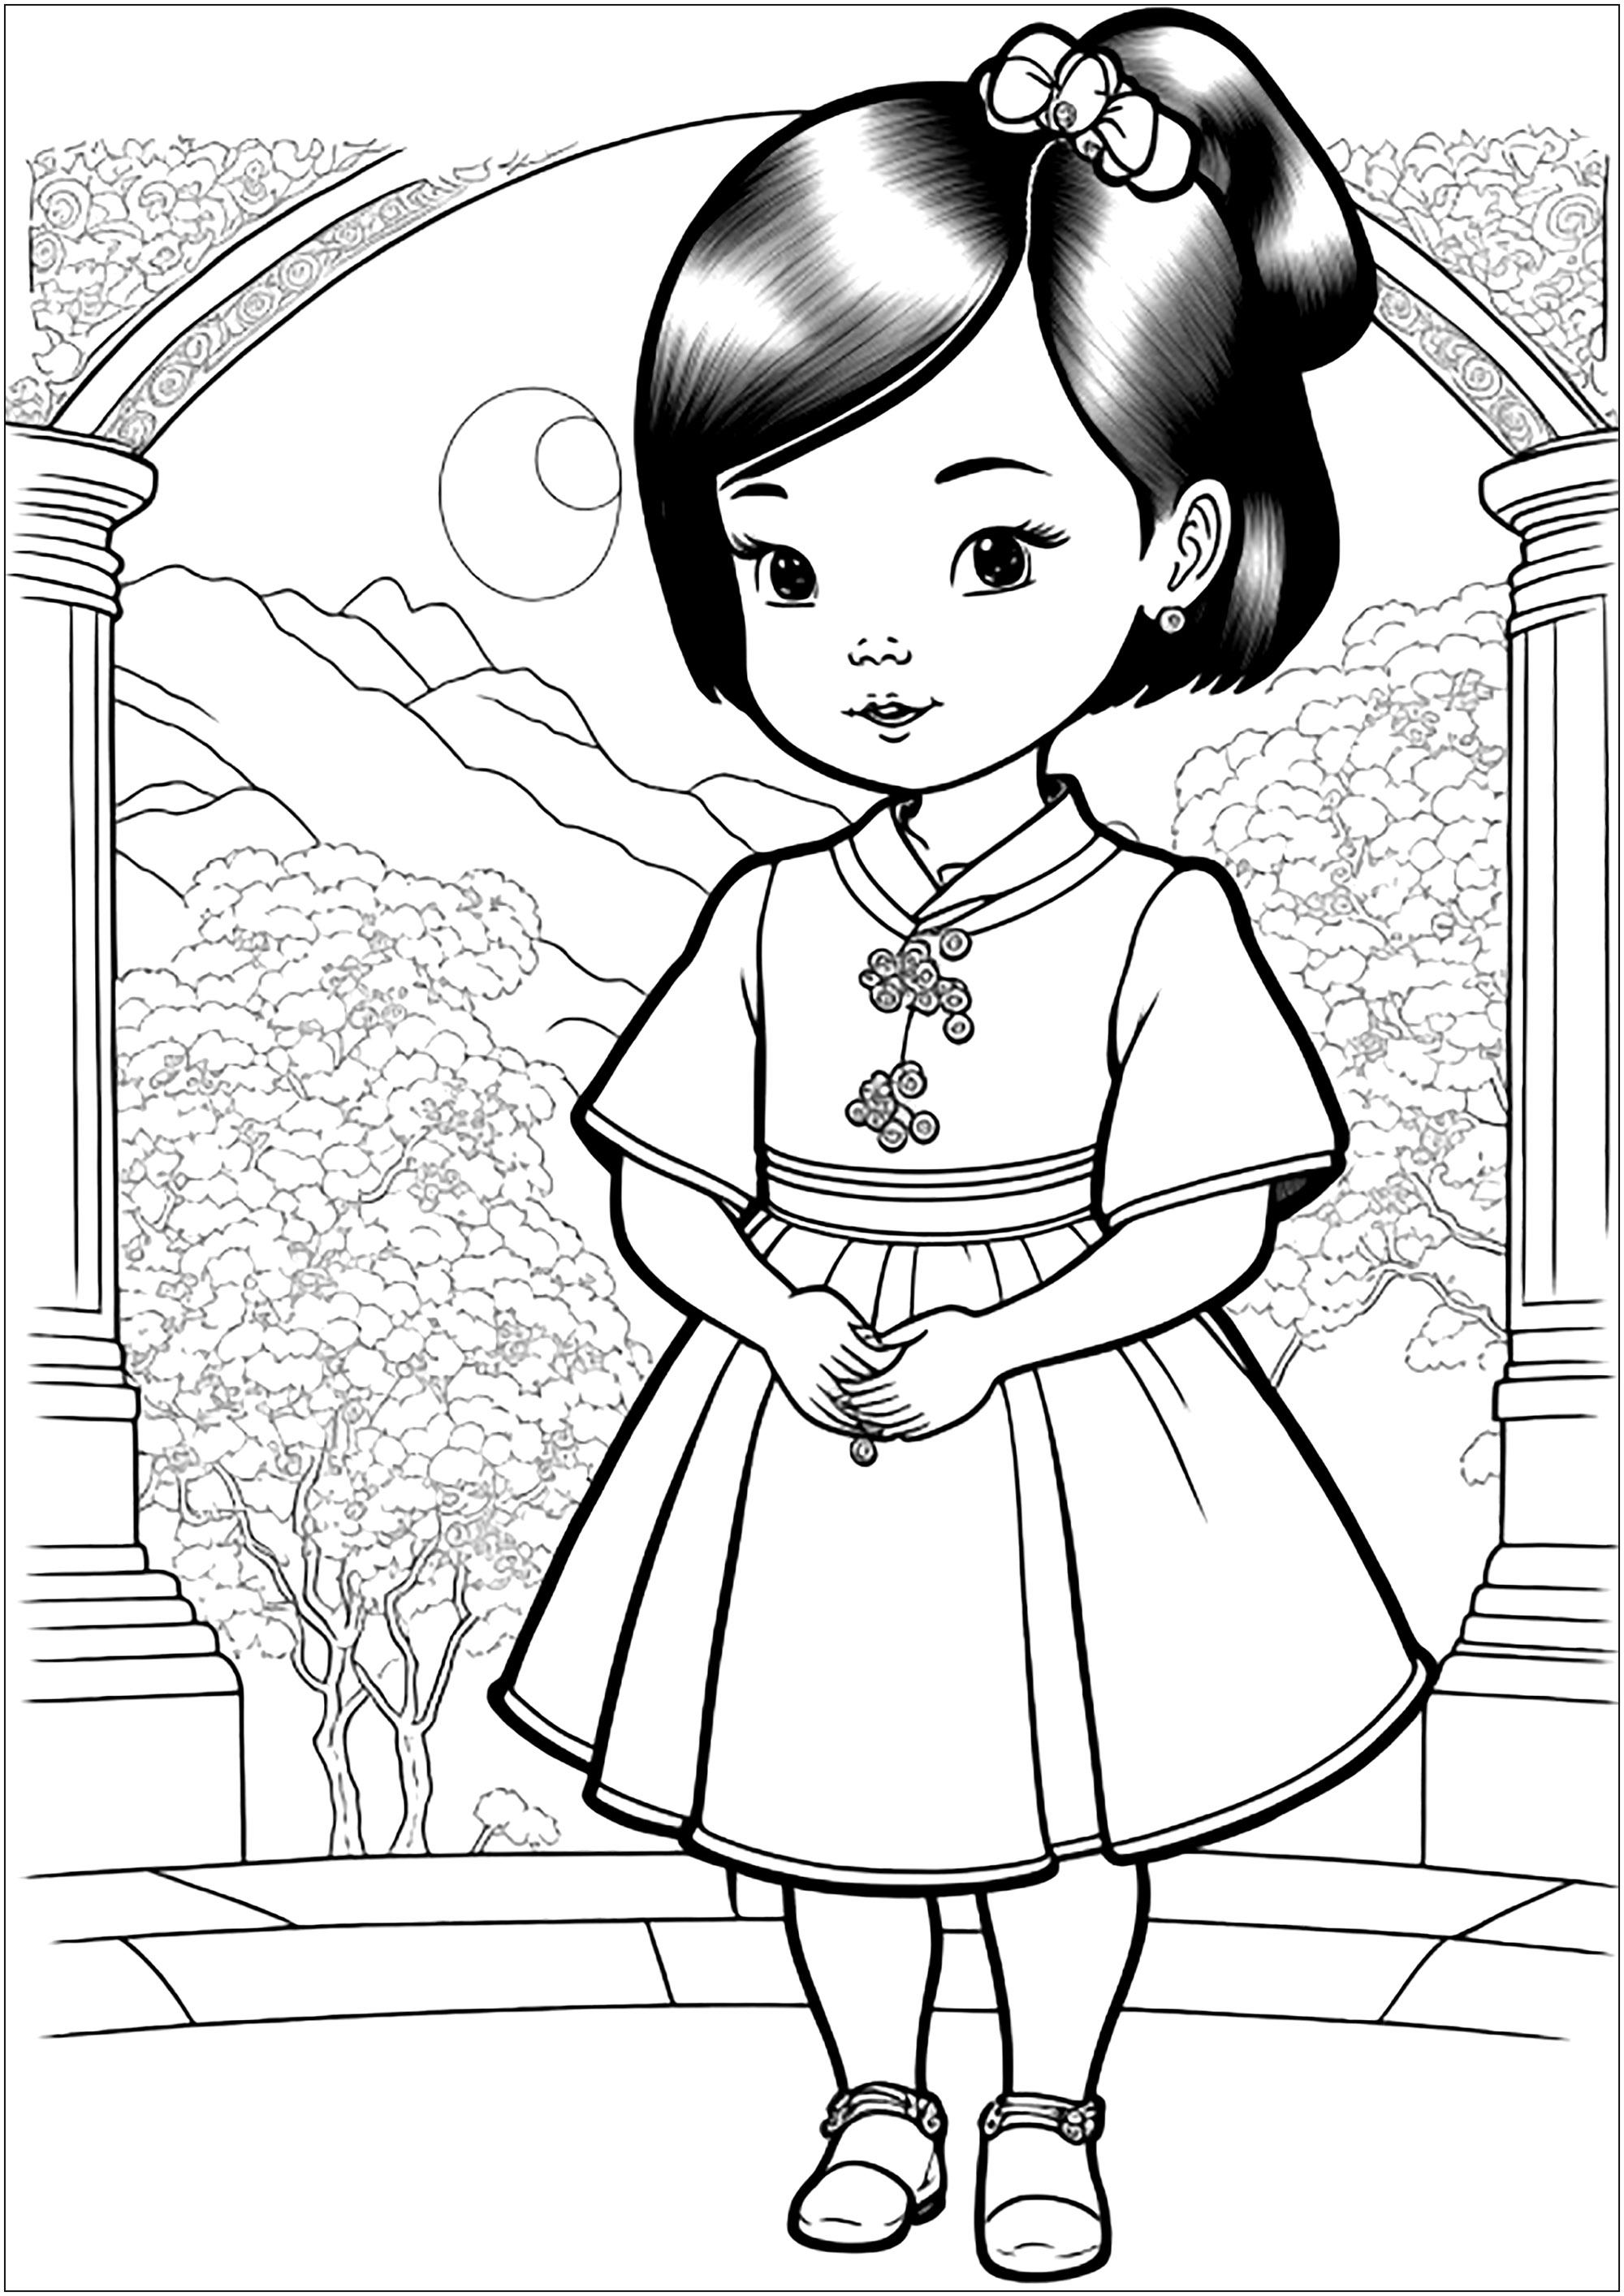 Menina chinesa para colorir. Colorir também o belo templo e a paisagem de fundo